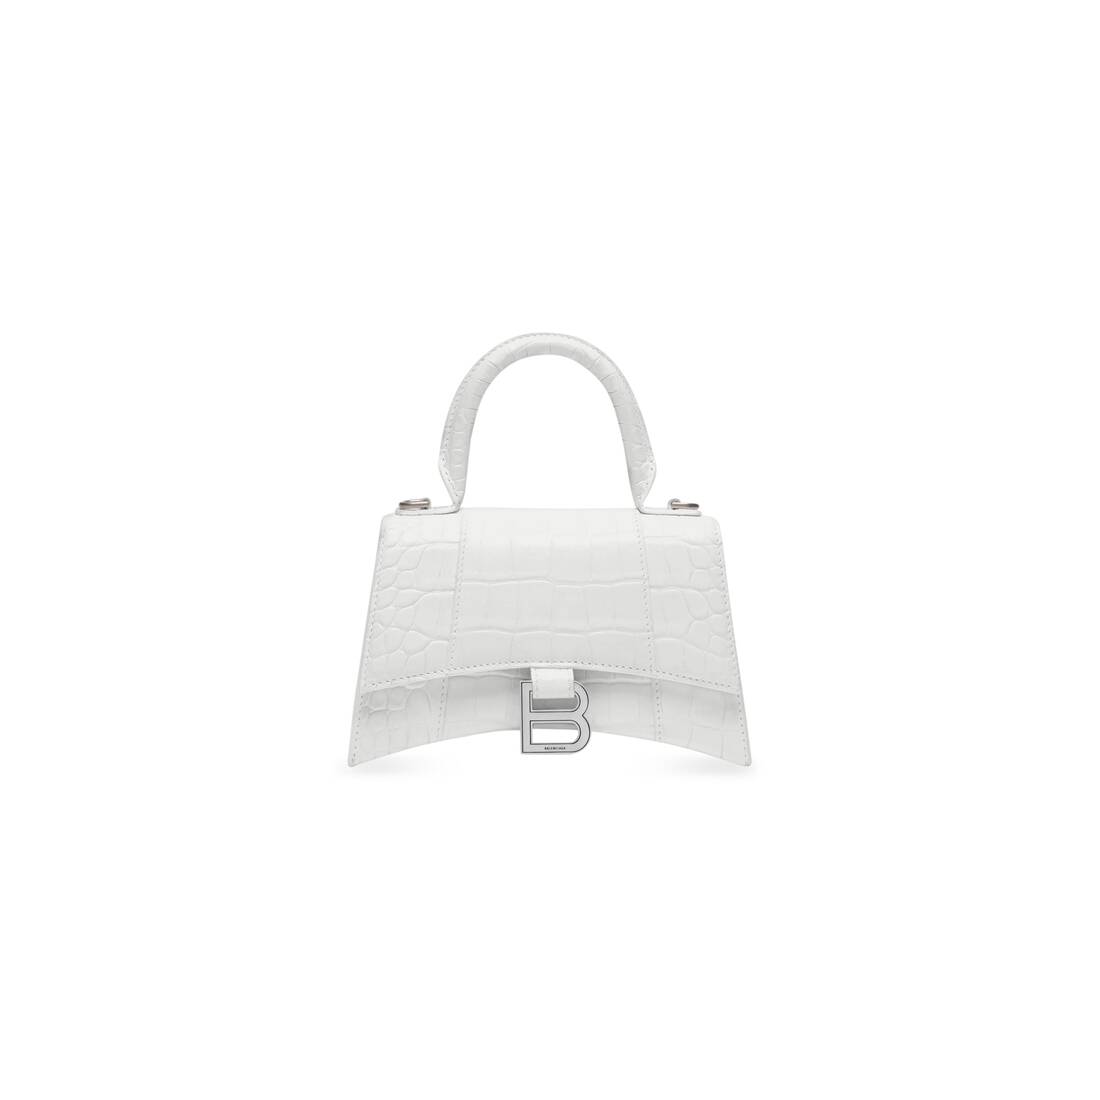 RARE BALENCIAGA Grey White Leather MOON Bag Purse With Mirror RT 2275   eBay